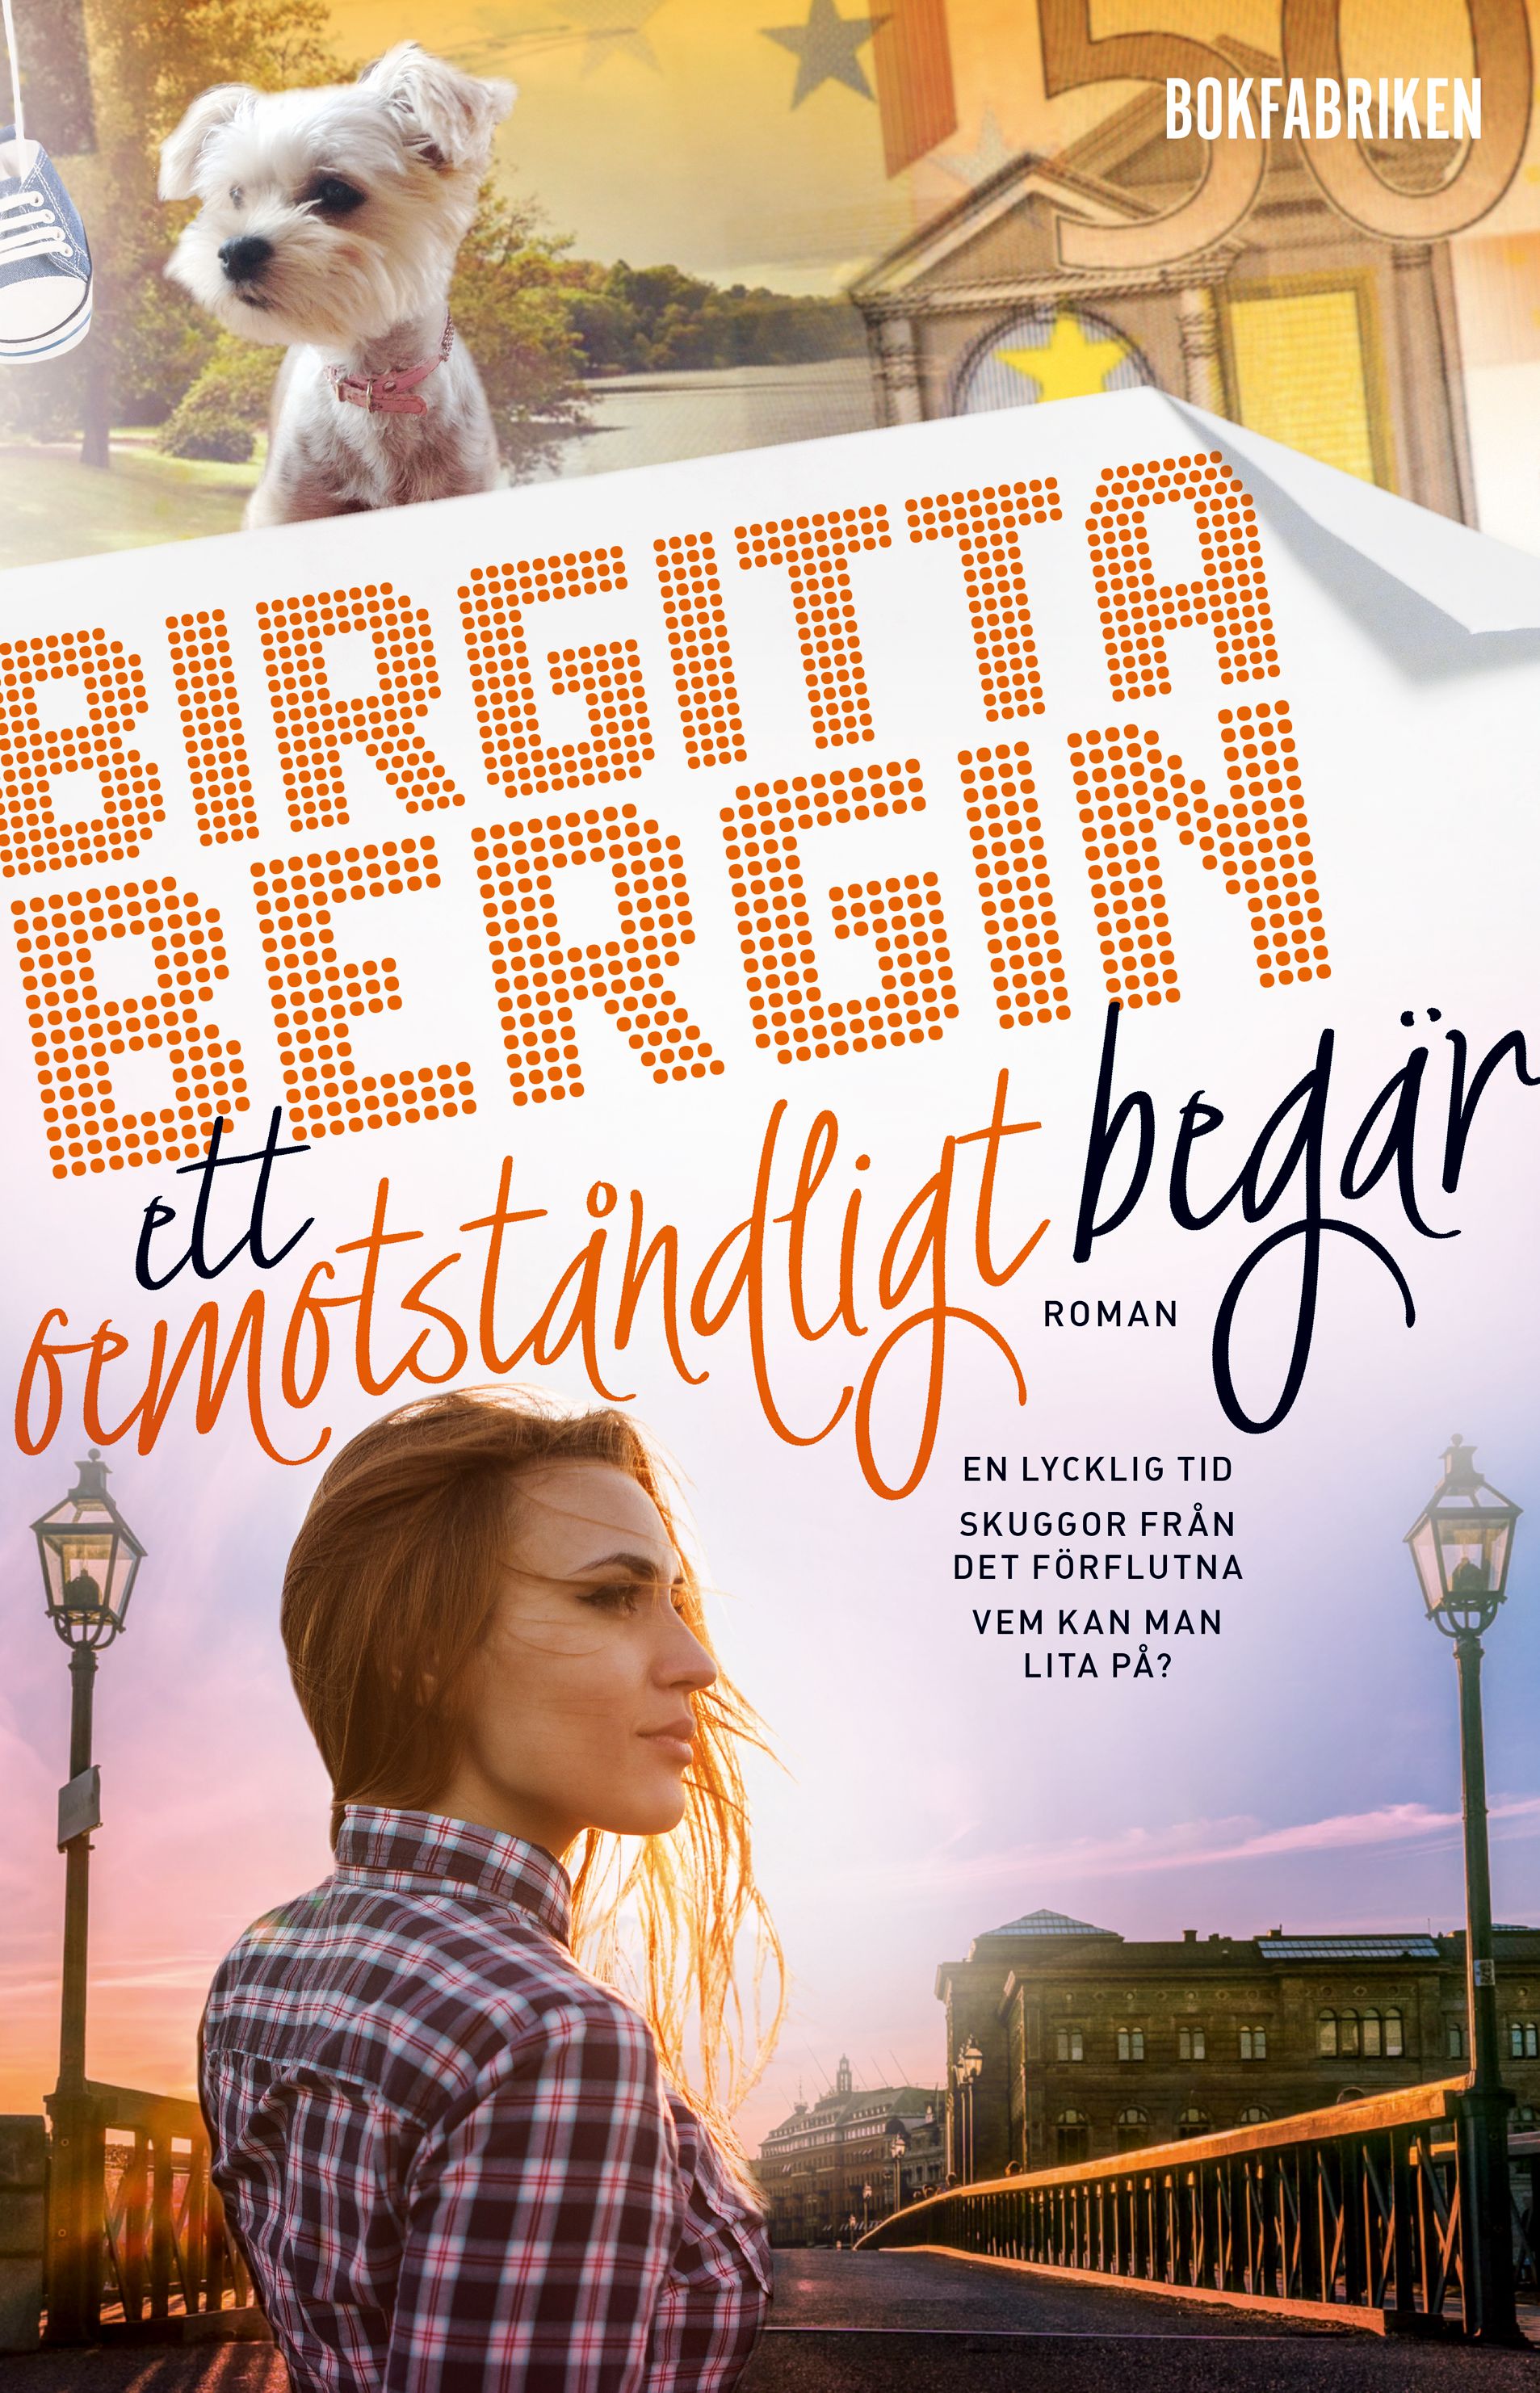 Ett oemotståndligt begär, e-bok av Birgitta Bergin